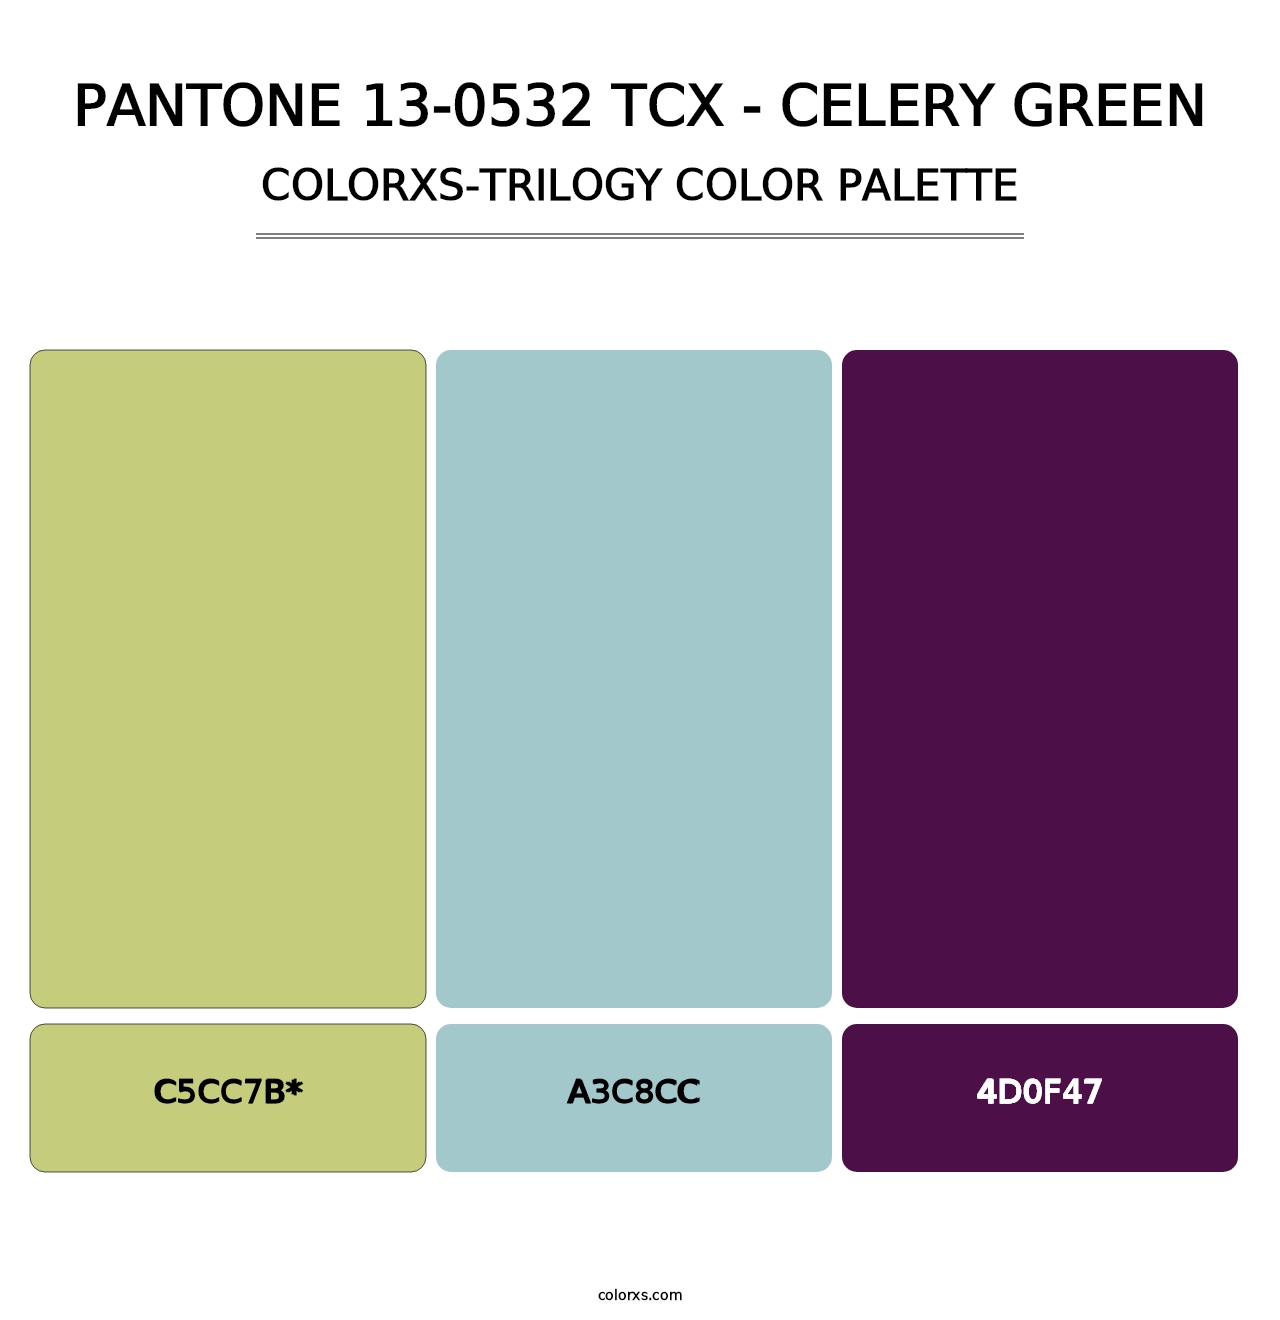 PANTONE 13-0532 TCX - Celery Green - Colorxs Trilogy Palette